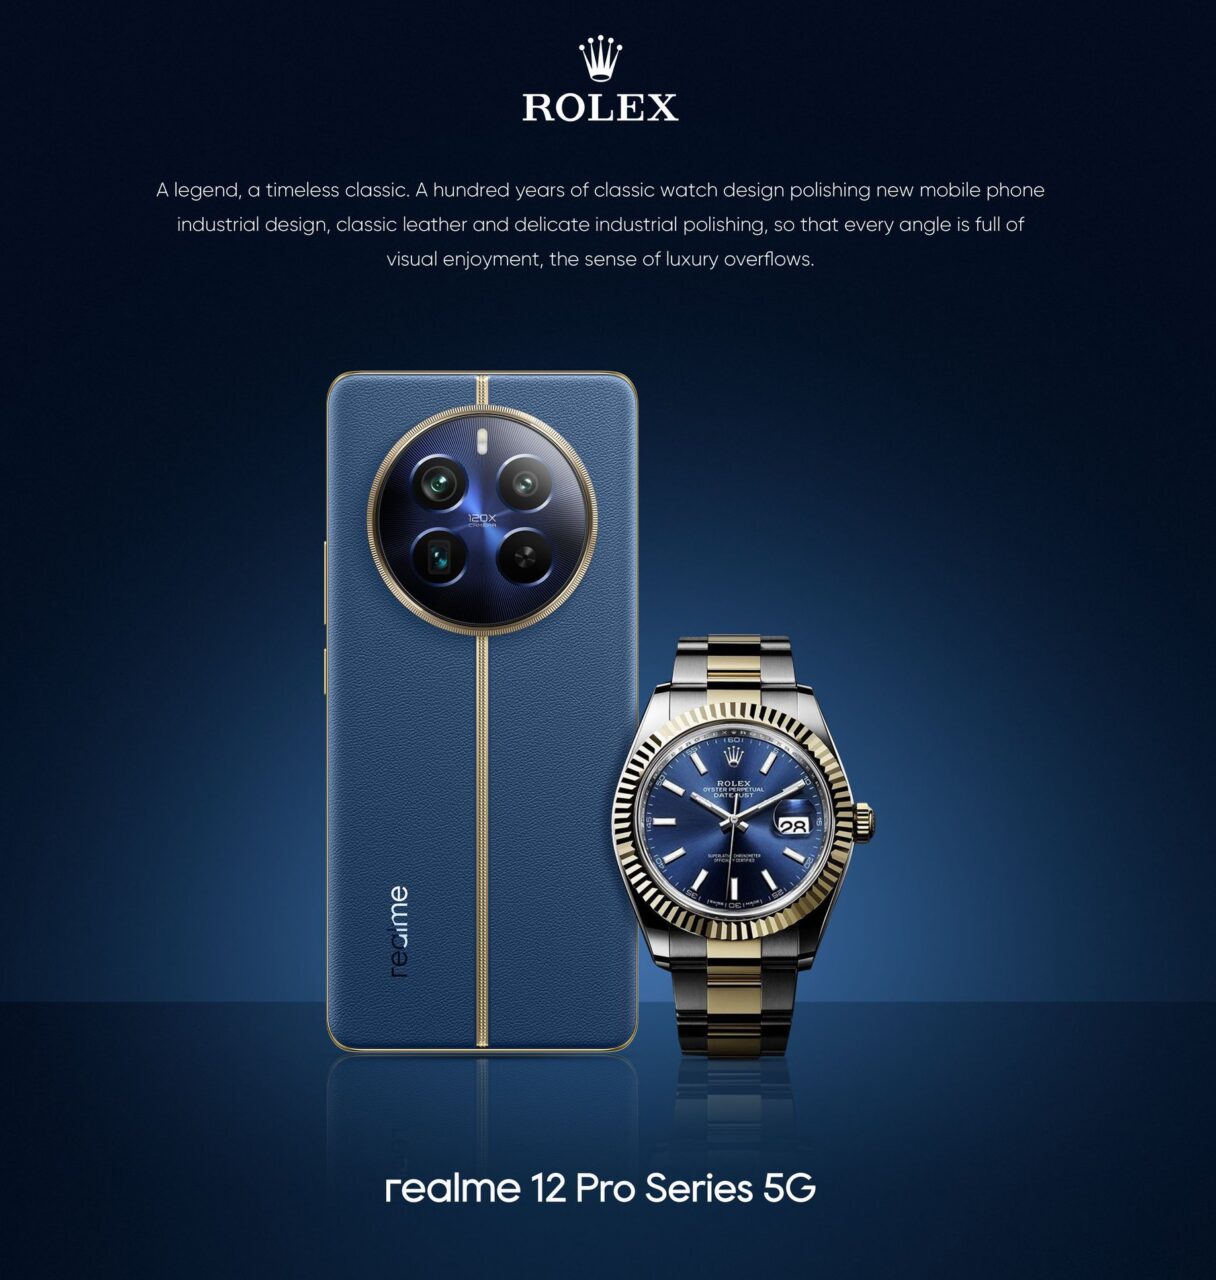 Smartfon Realme 12 Pro Series 5G w niebieskim kolorze z wyrazistym designem obok złotego zegarka na niebieskim tle z logotypem Rolex i tekstem o klasycznym wzornictwie zegarków.